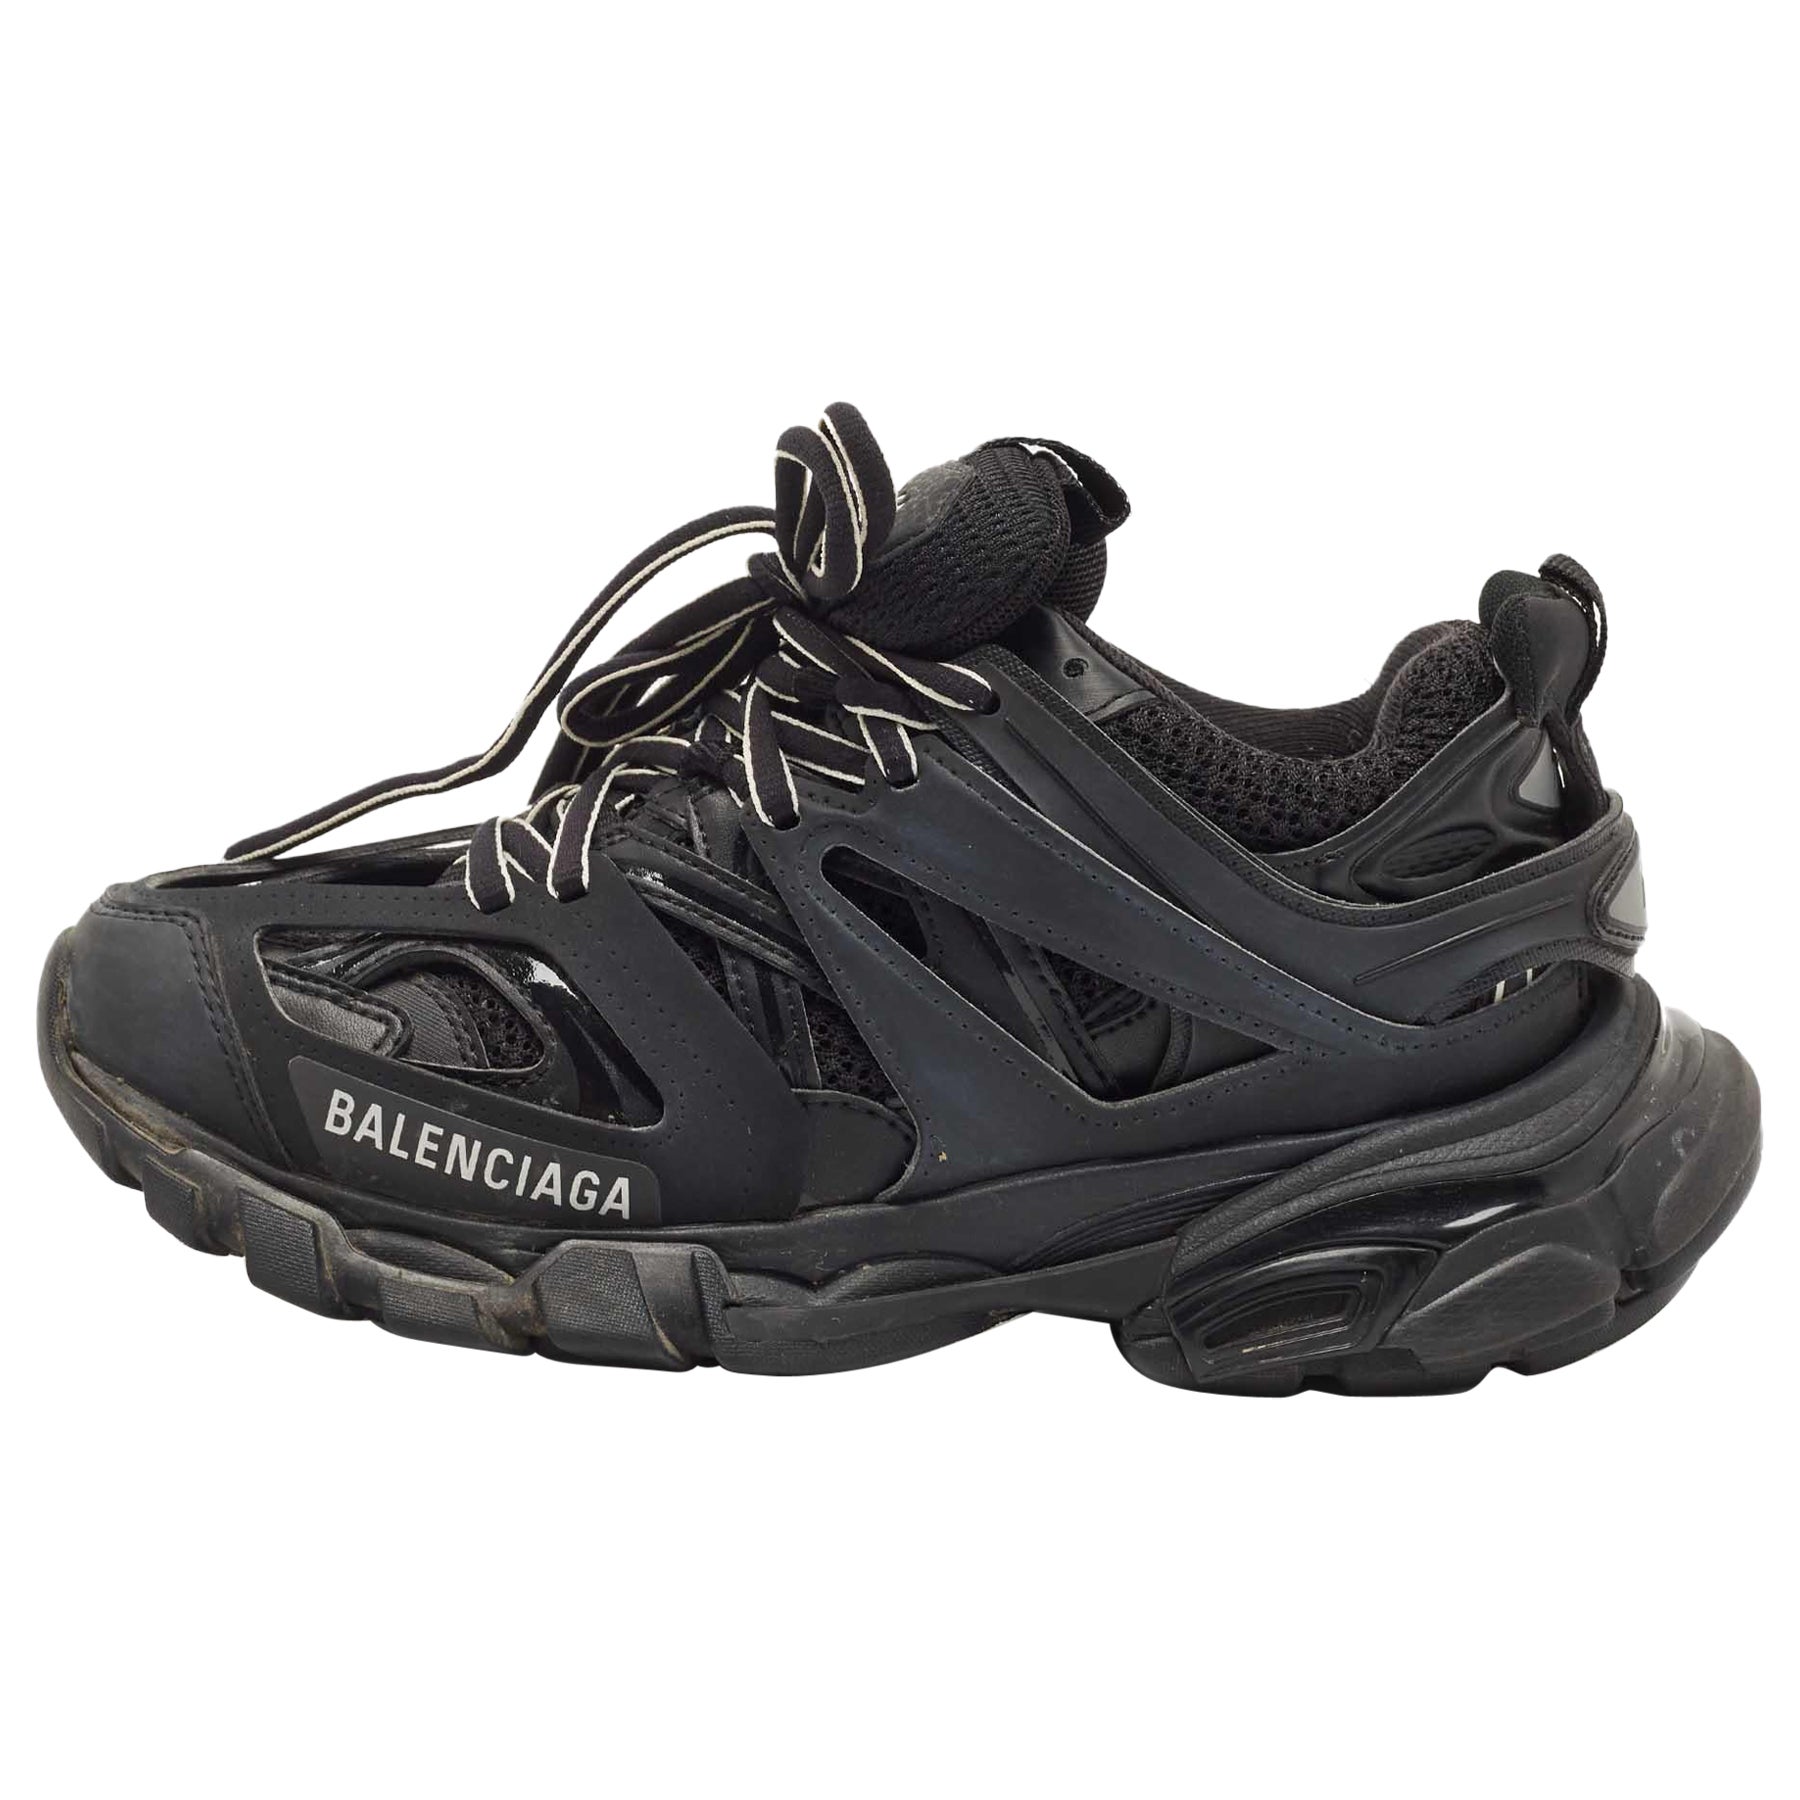 Balenciaga Baskets basses Track 2 en caoutchouc et maille noires, Taille 35